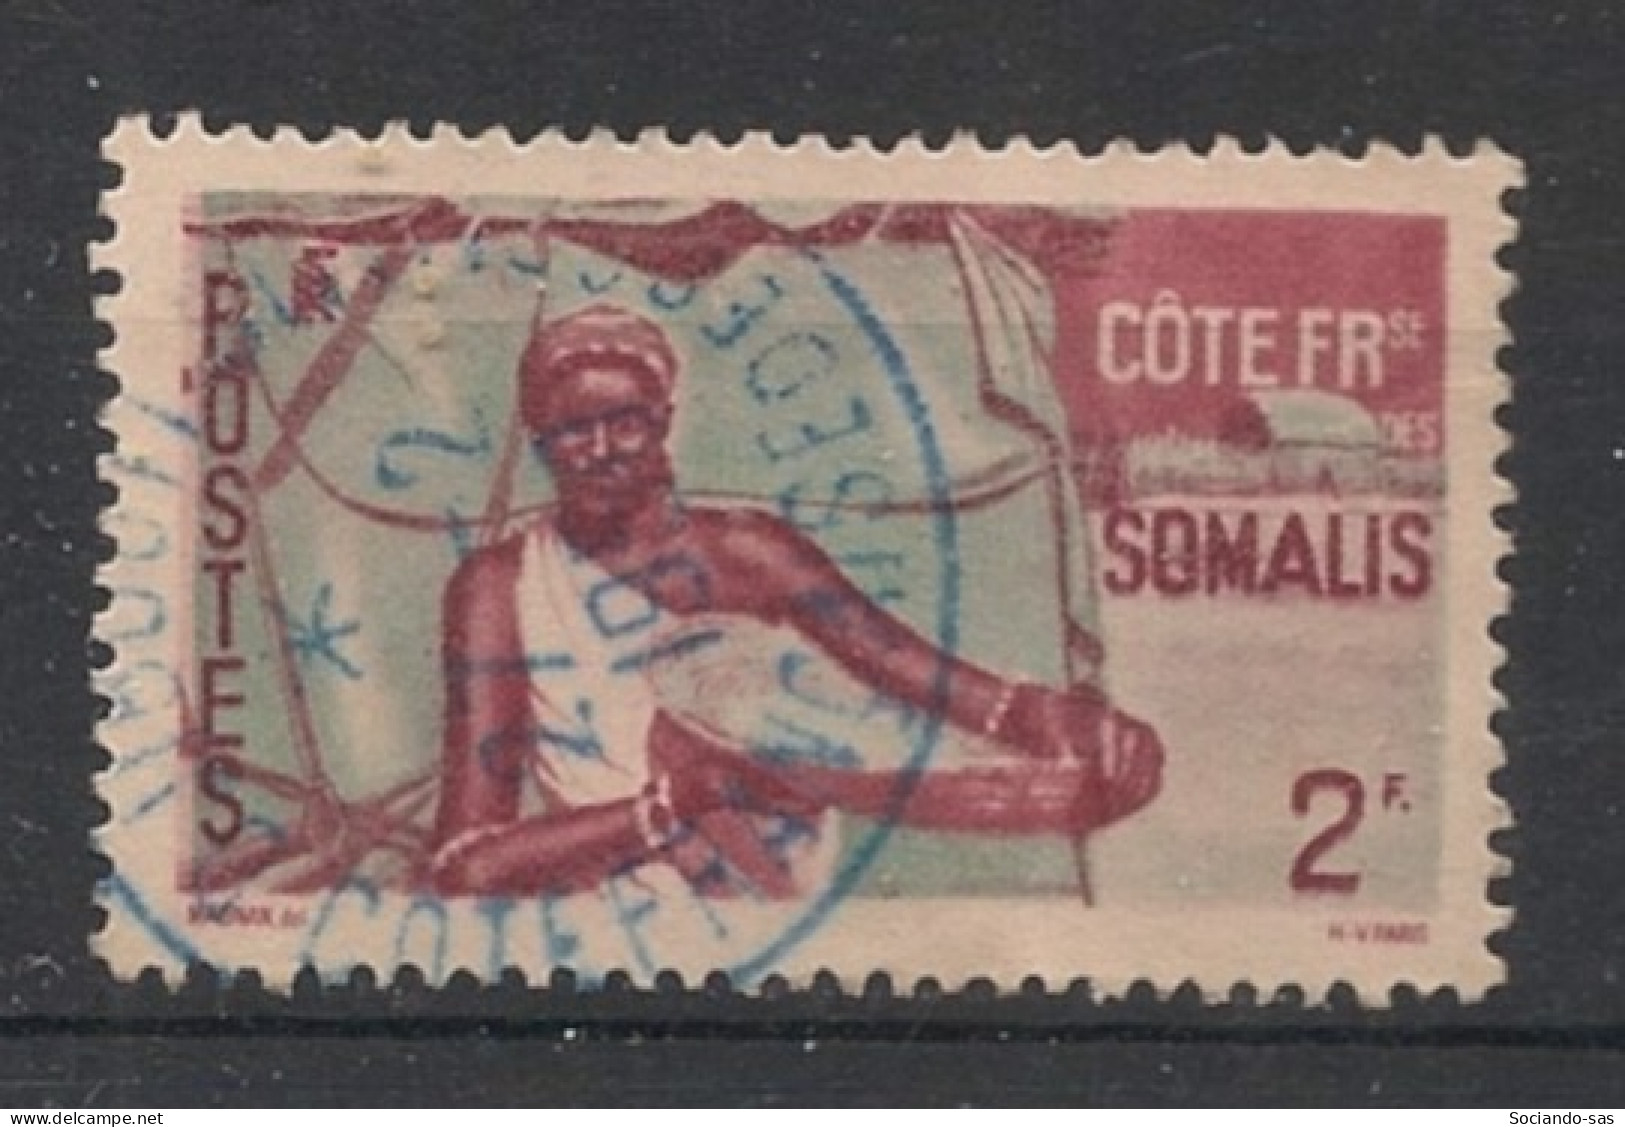 COTE DES SOMALIS - 1947 - N°YT. 273 - Femme Somali 2f - Oblitéré / Used - Gebruikt